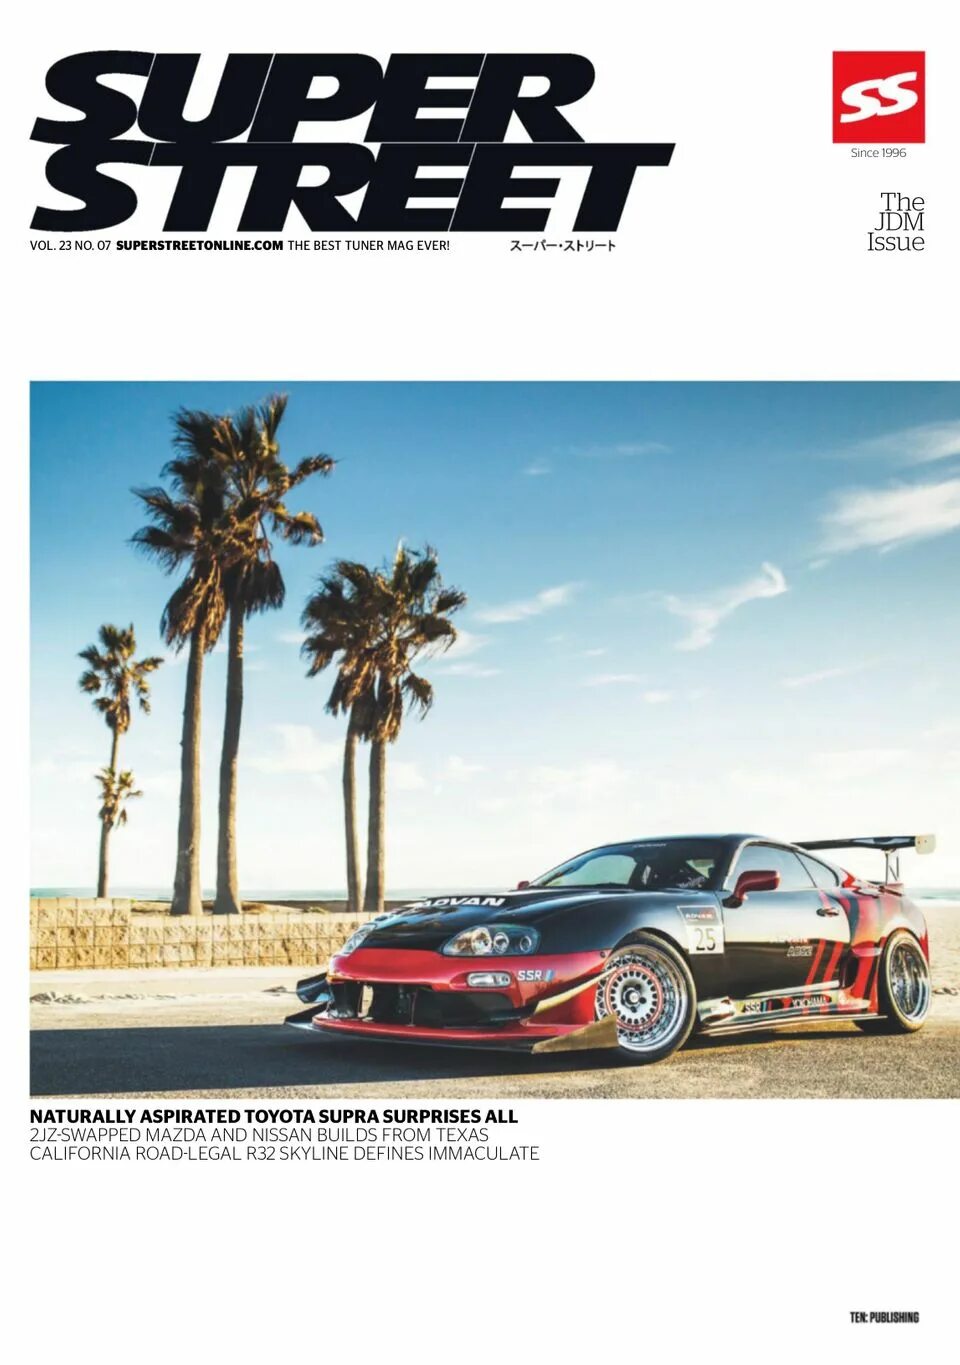 Super magazine. Super Street Magazine. Street Magazine.